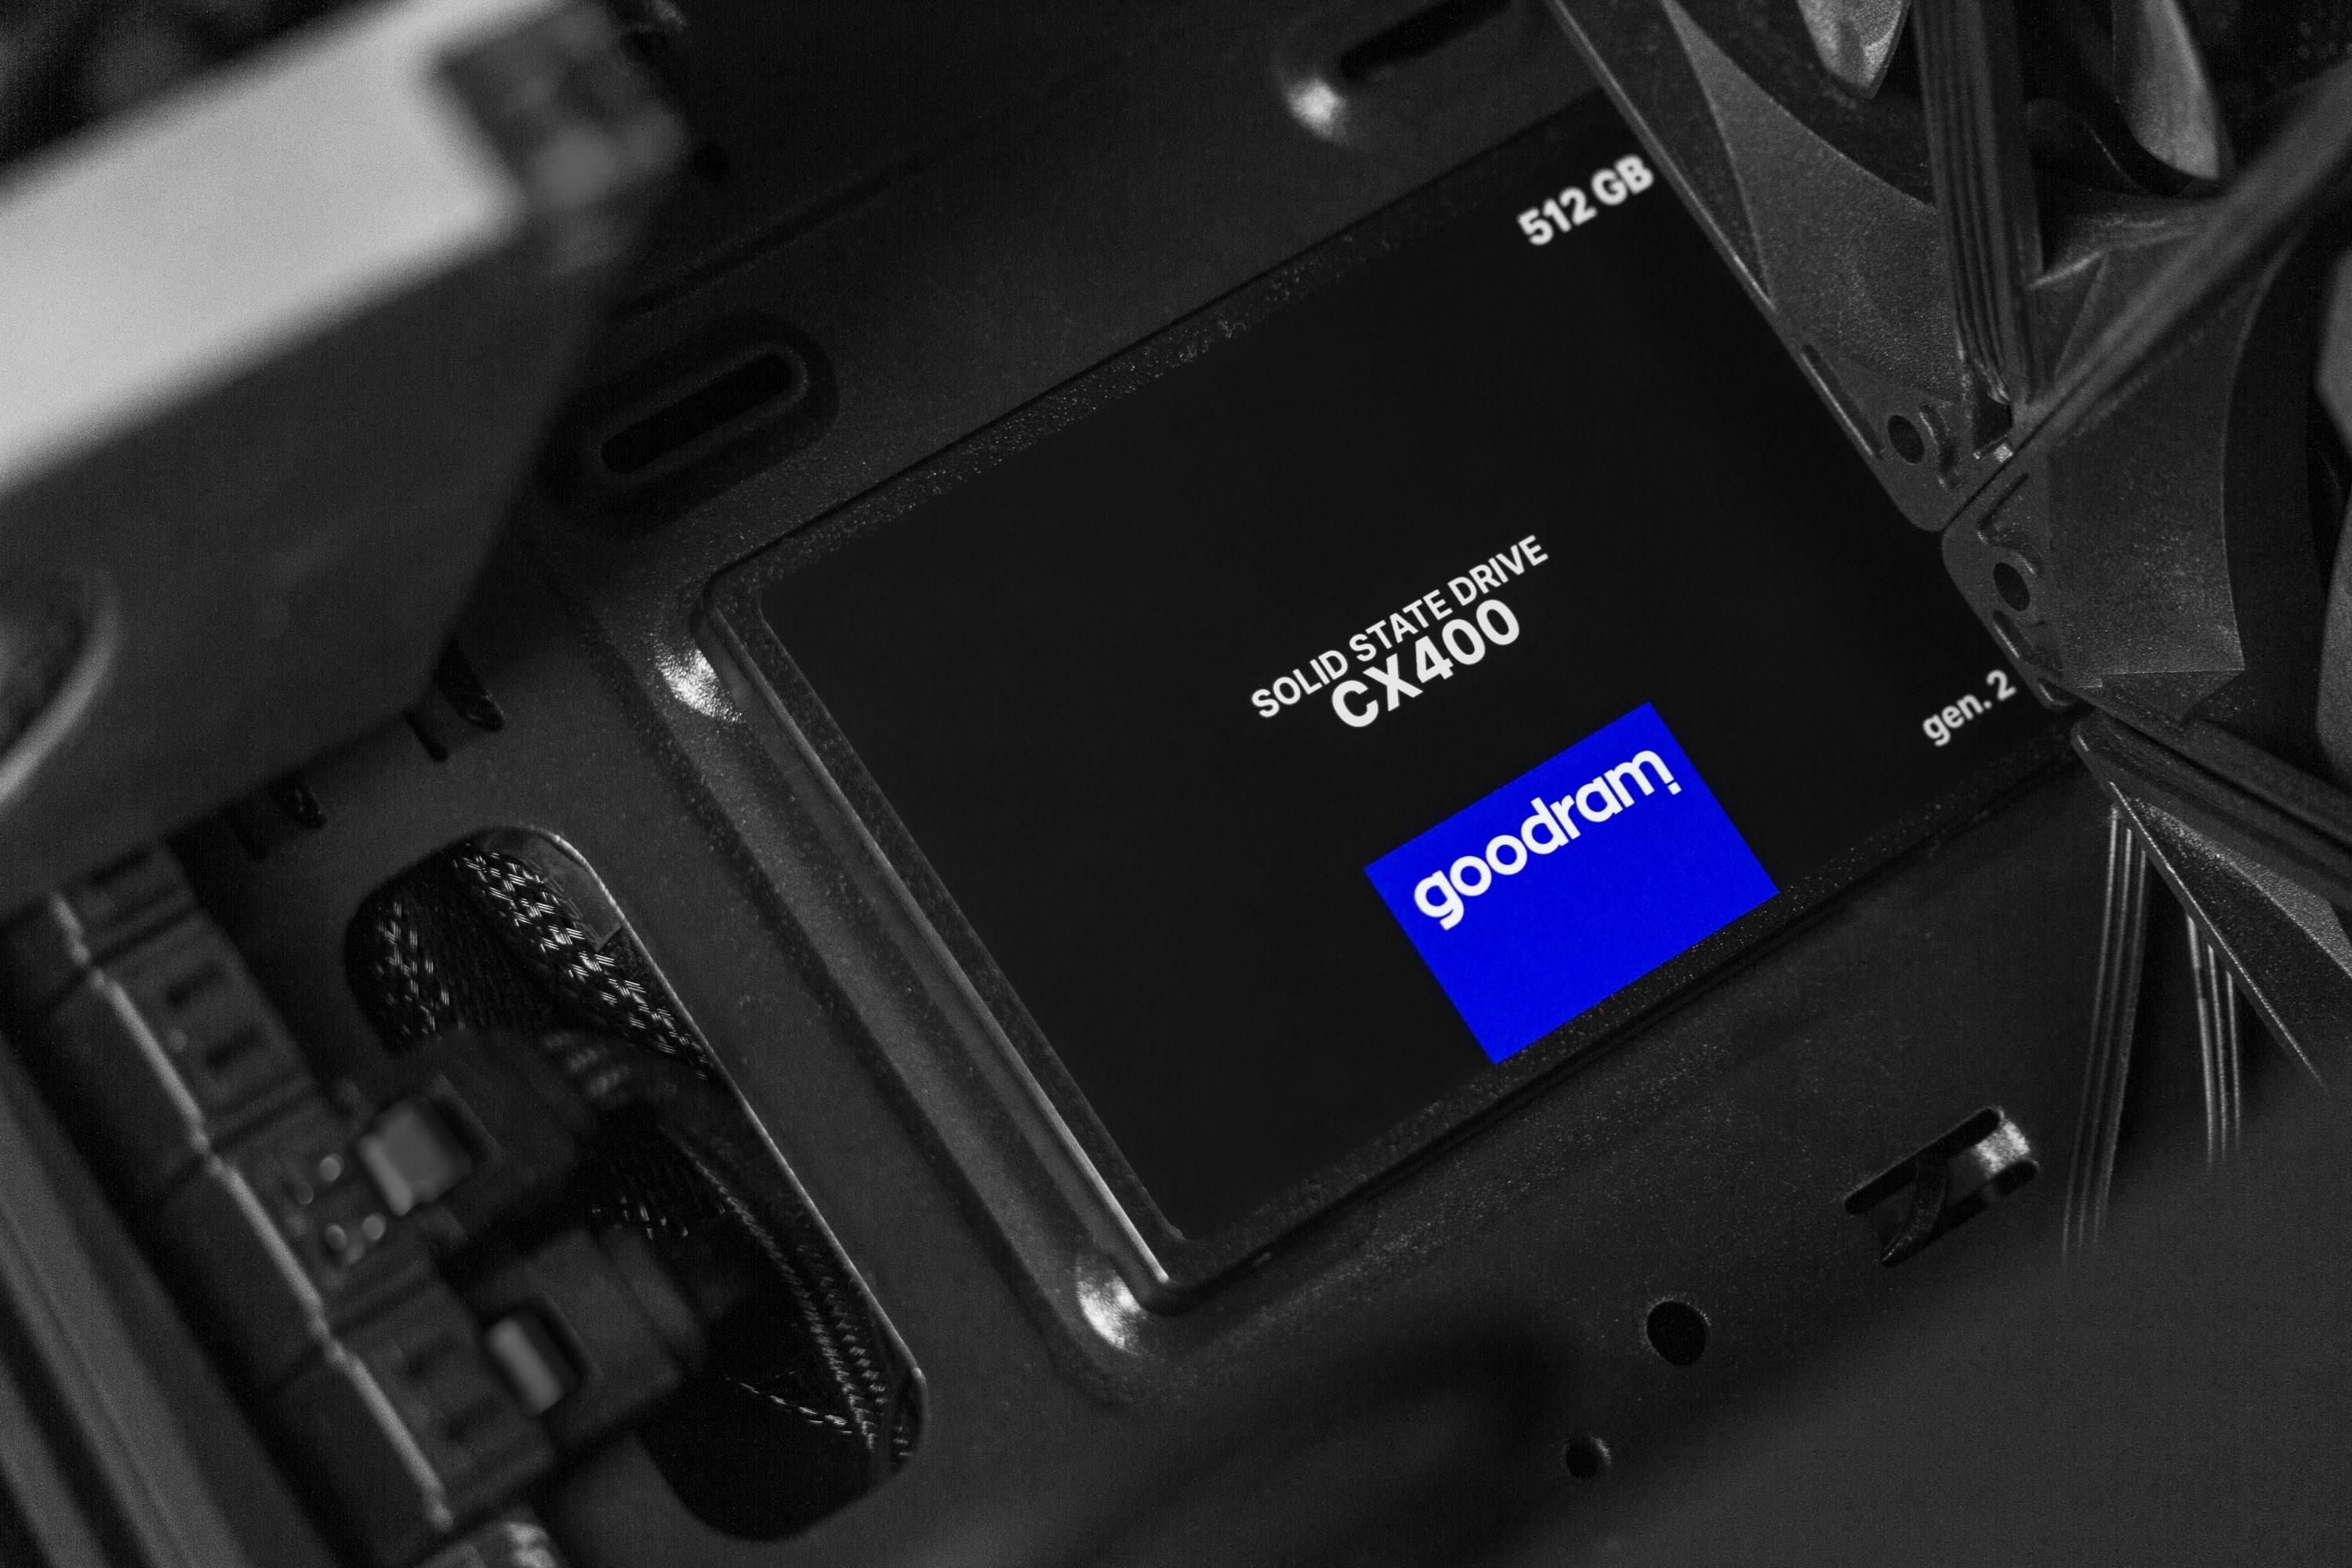 Goodram 256GB CX400 G.2 2,5 Sata III (SSDPR-CX400-256-G2)